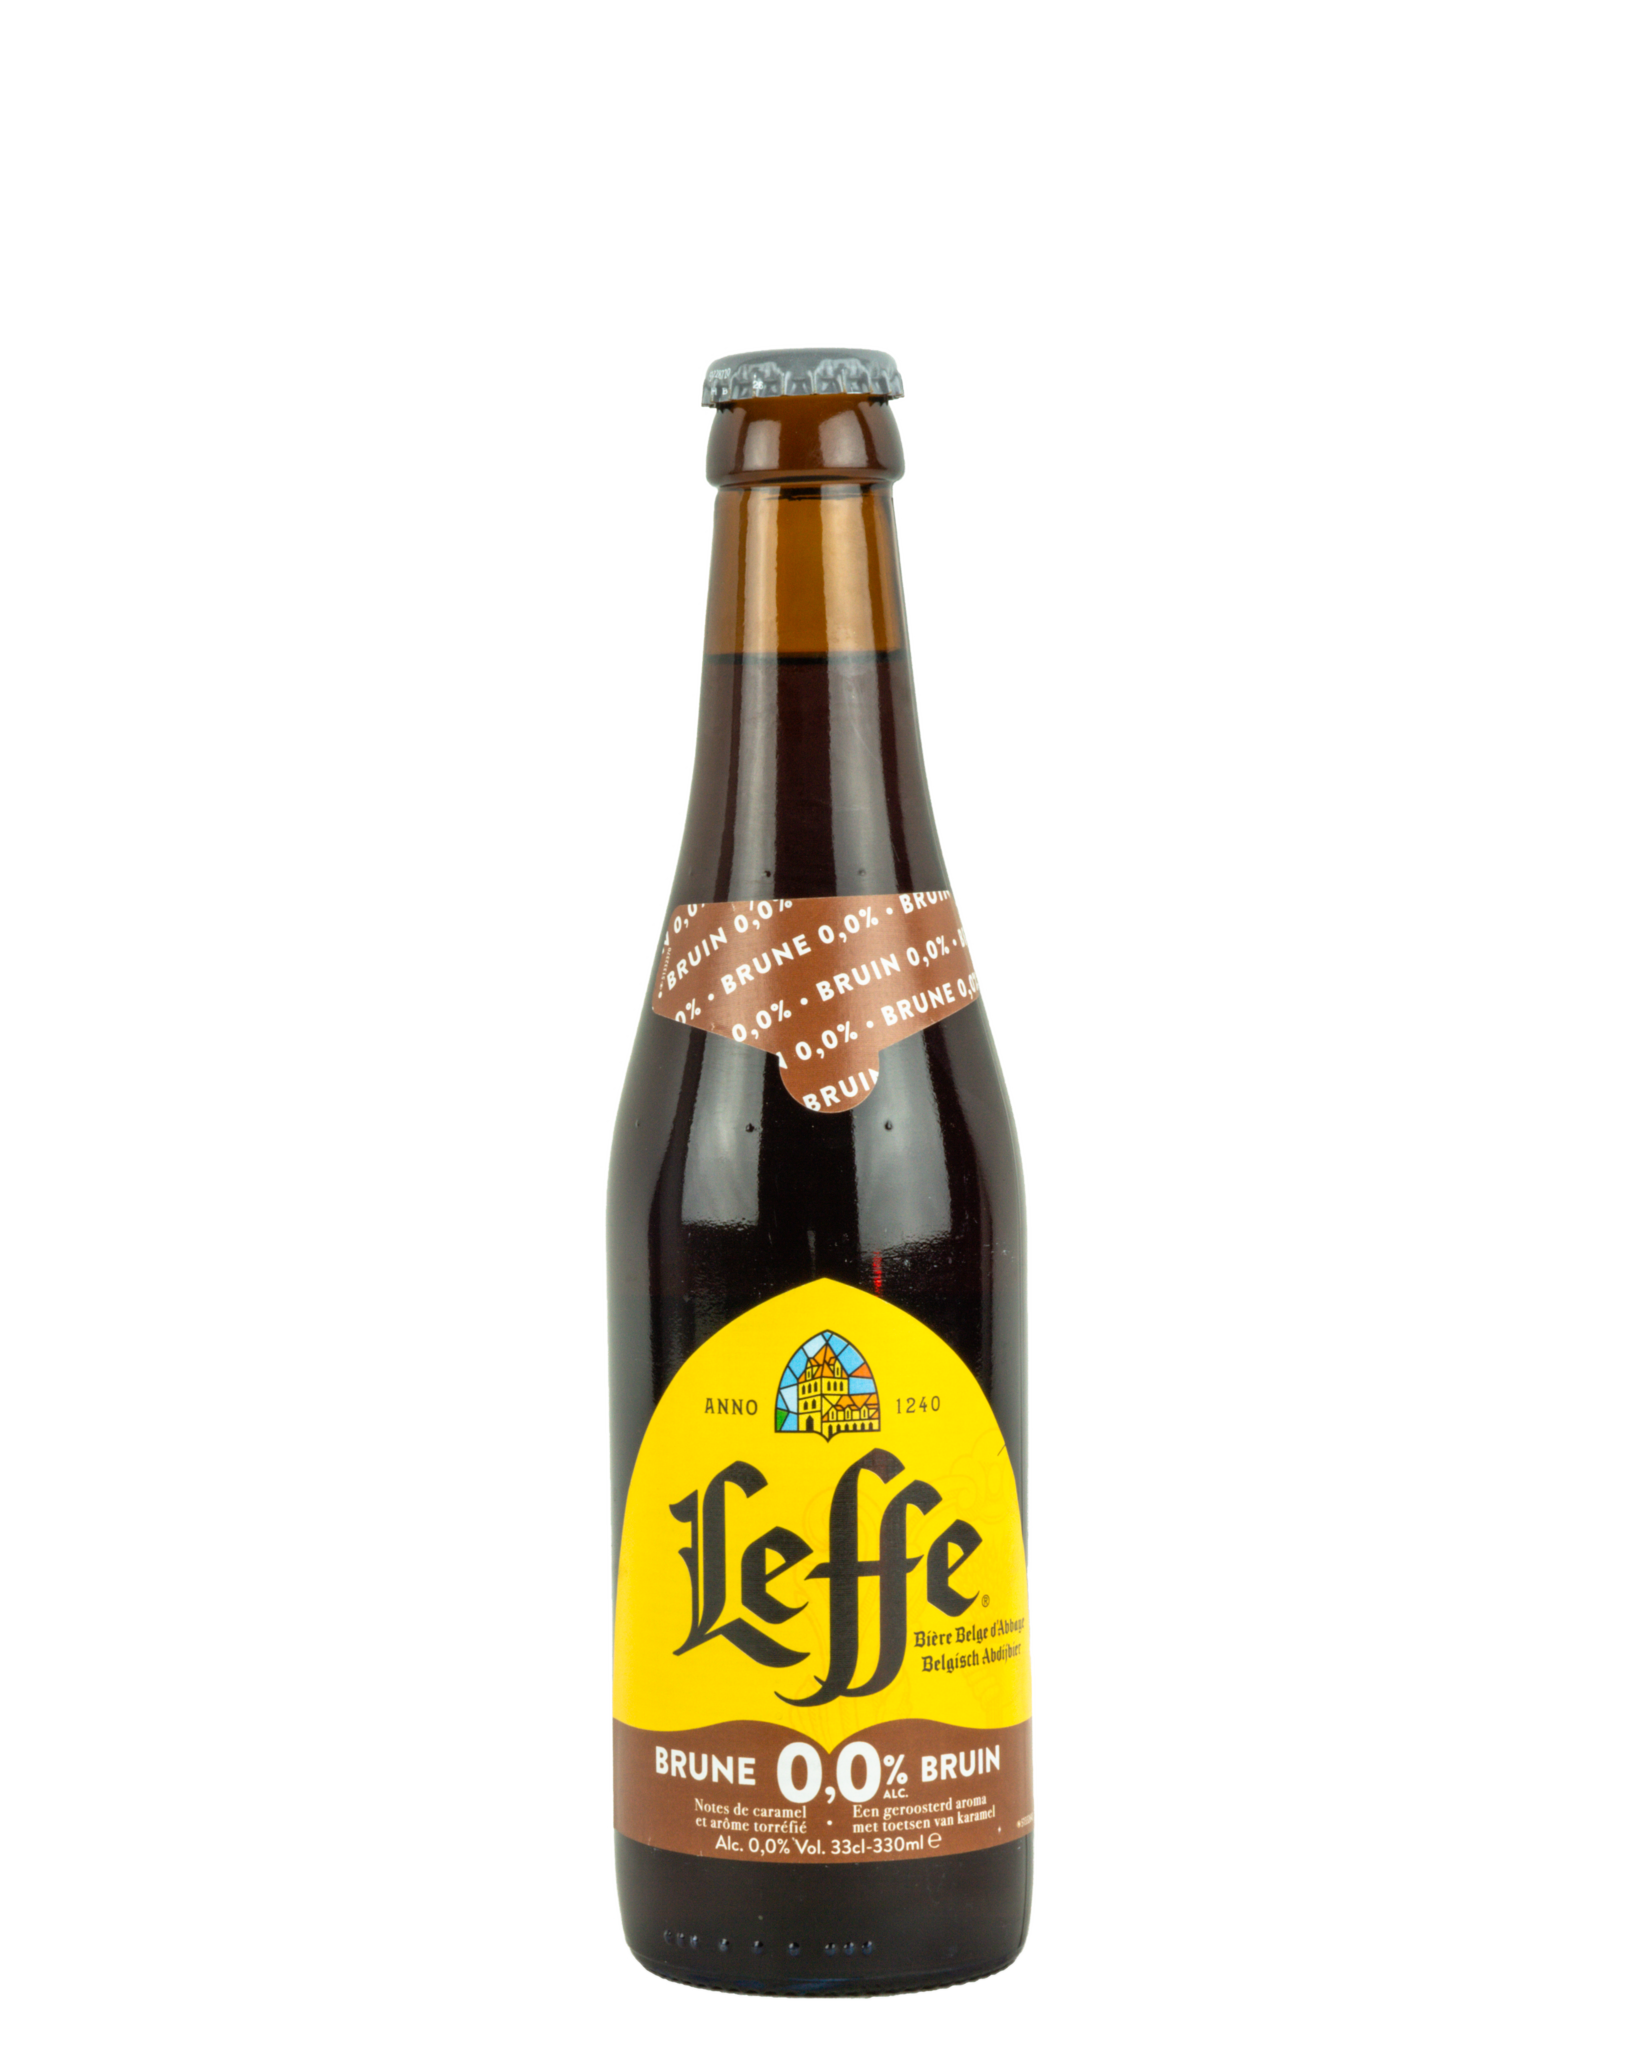 LEFFE Bières belges d'Abbaye sélection coffret 6% + 2 verres